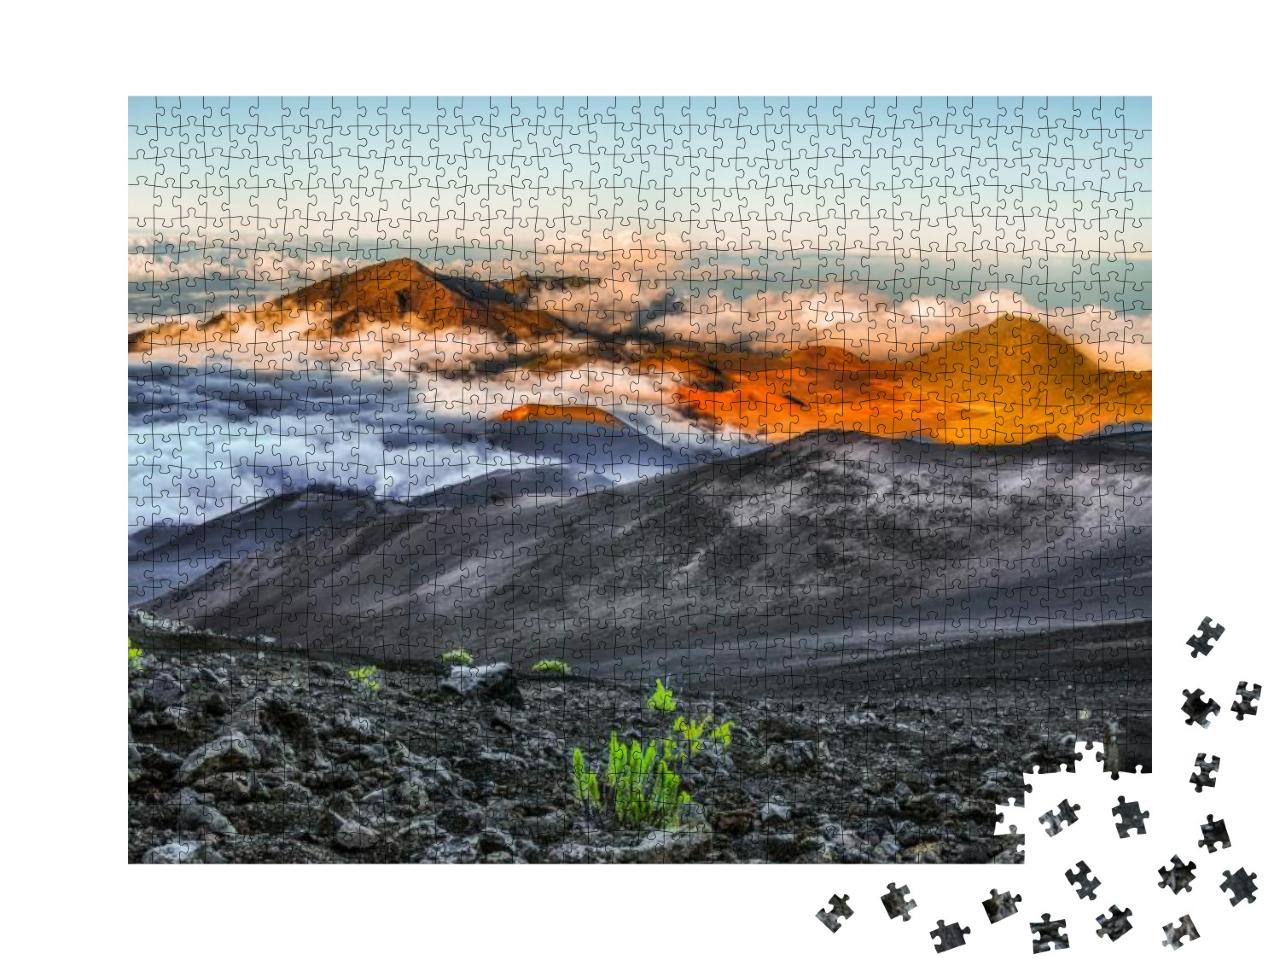 Haleakala National Park, Maui, Hawaii... Jigsaw Puzzle with 1000 pieces